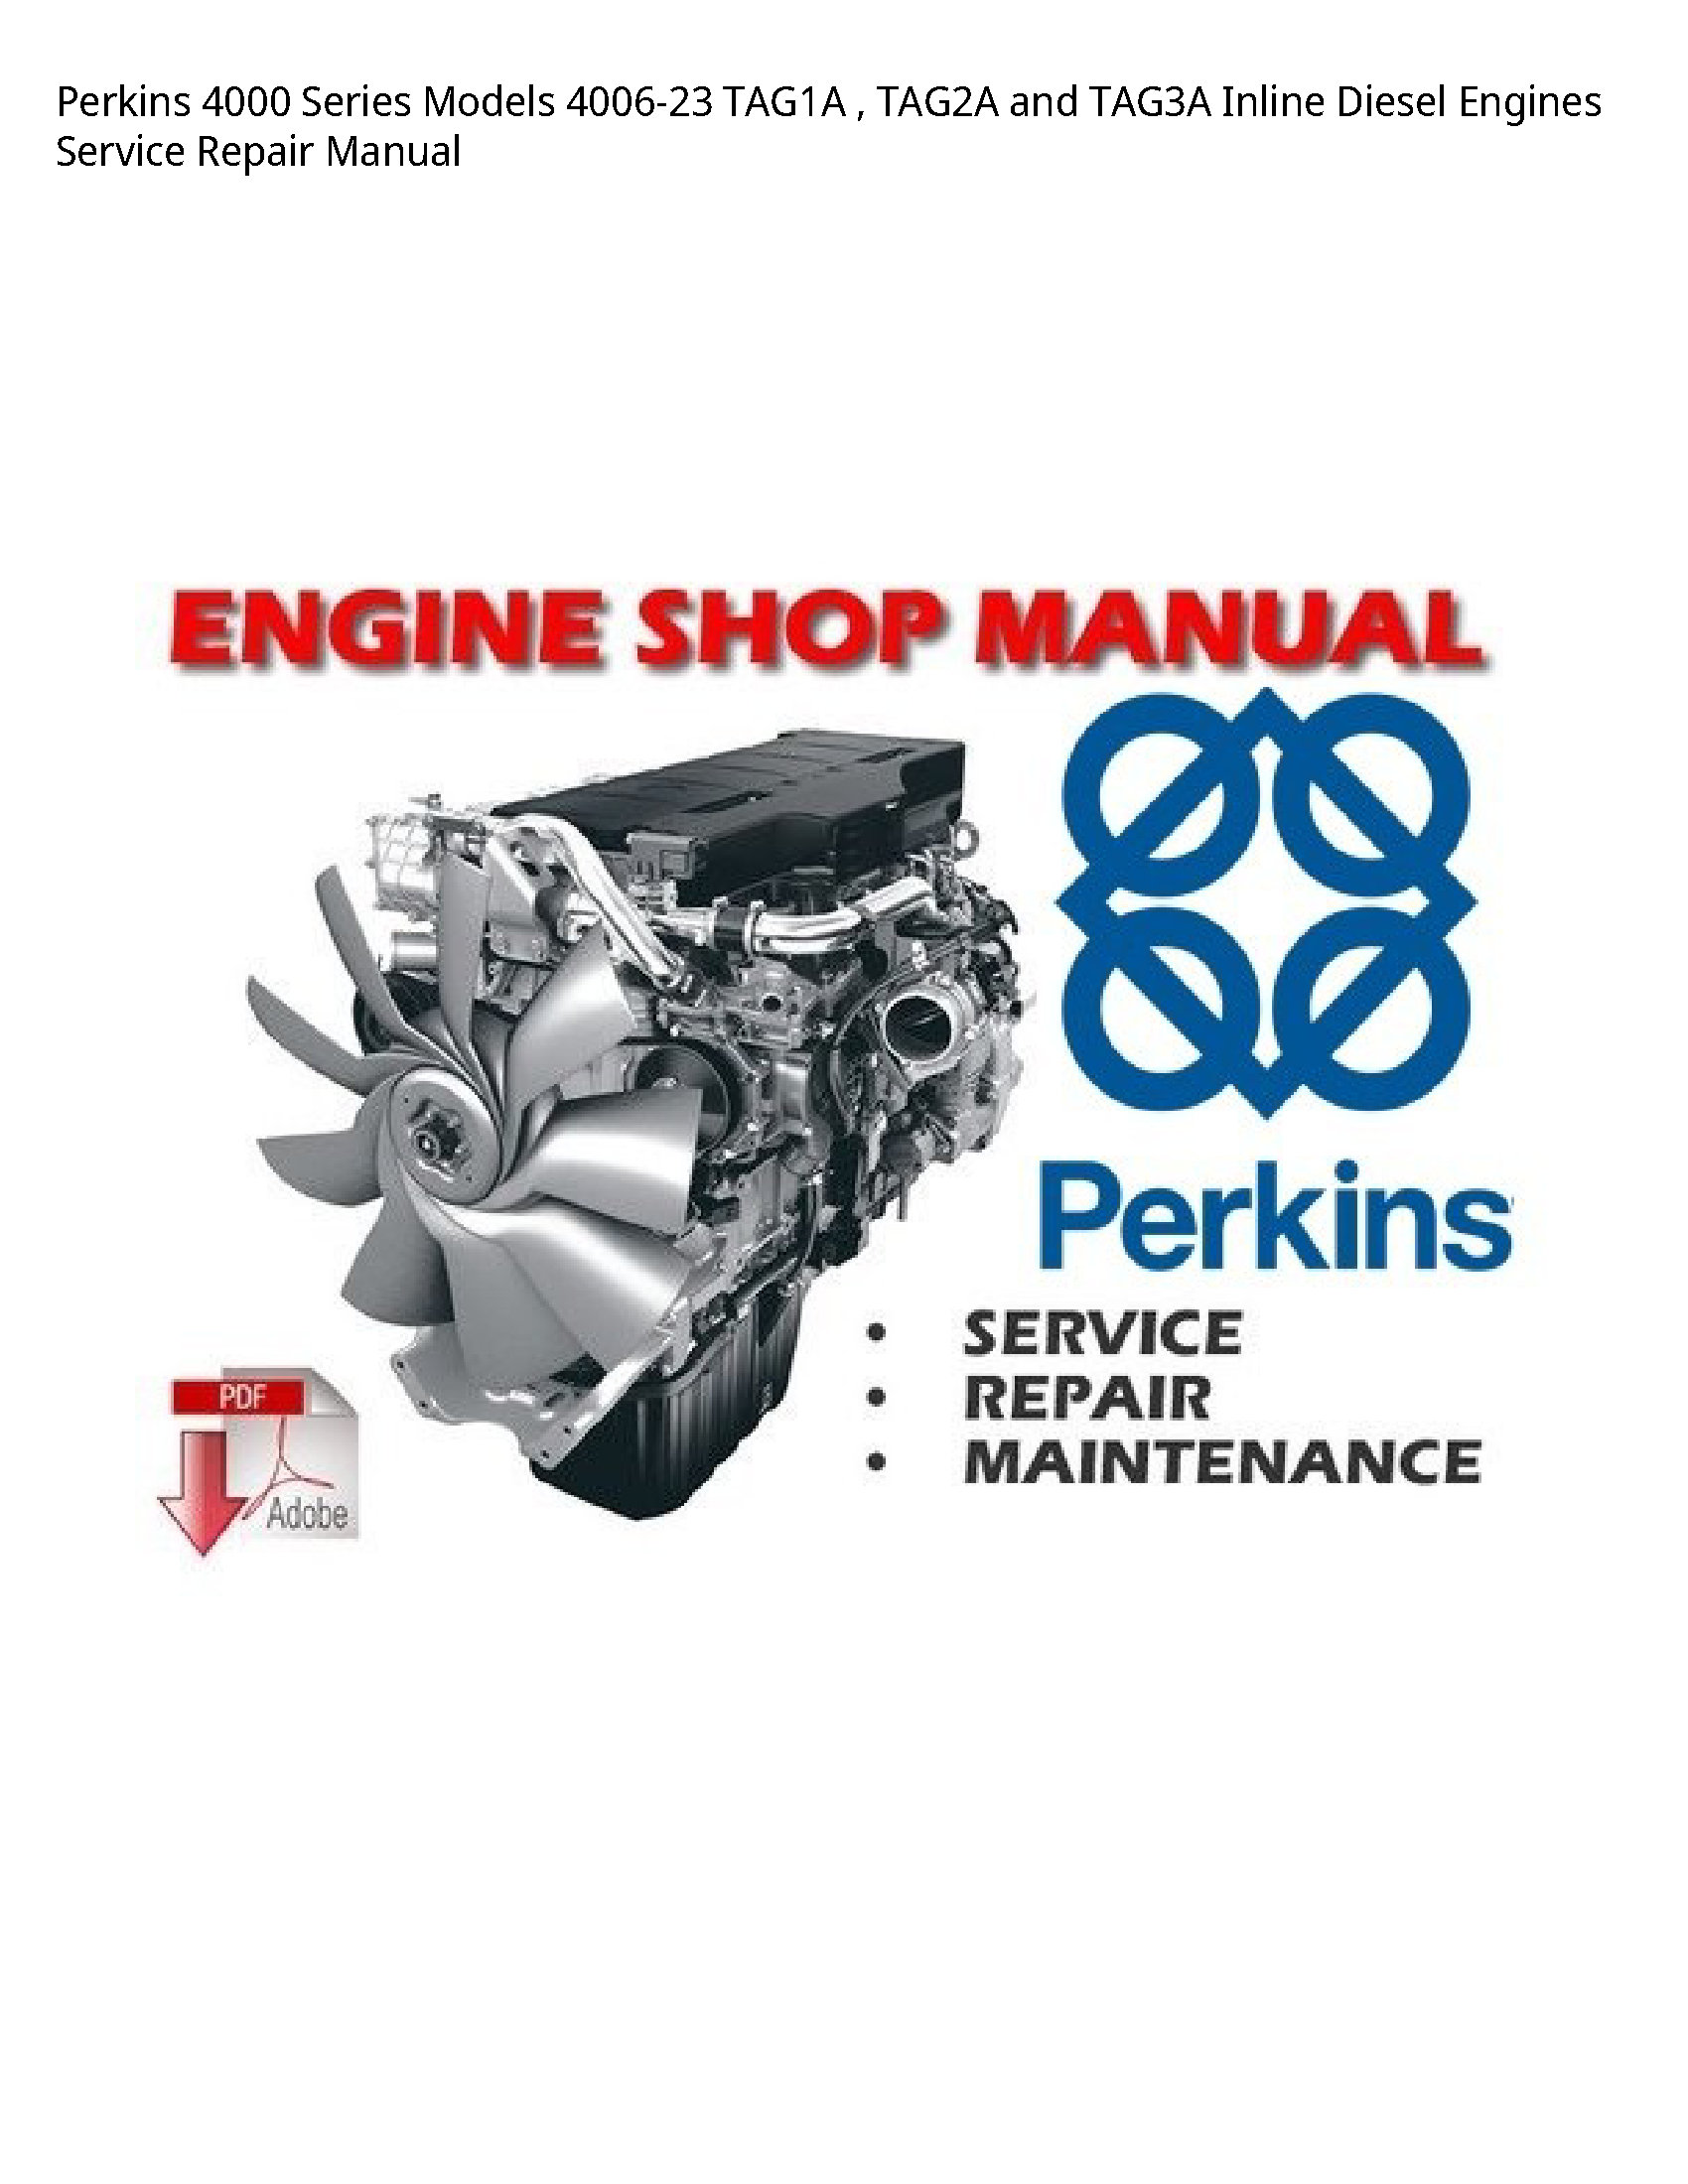 Perkins 4000 Series  Inline Diesel Engines manual